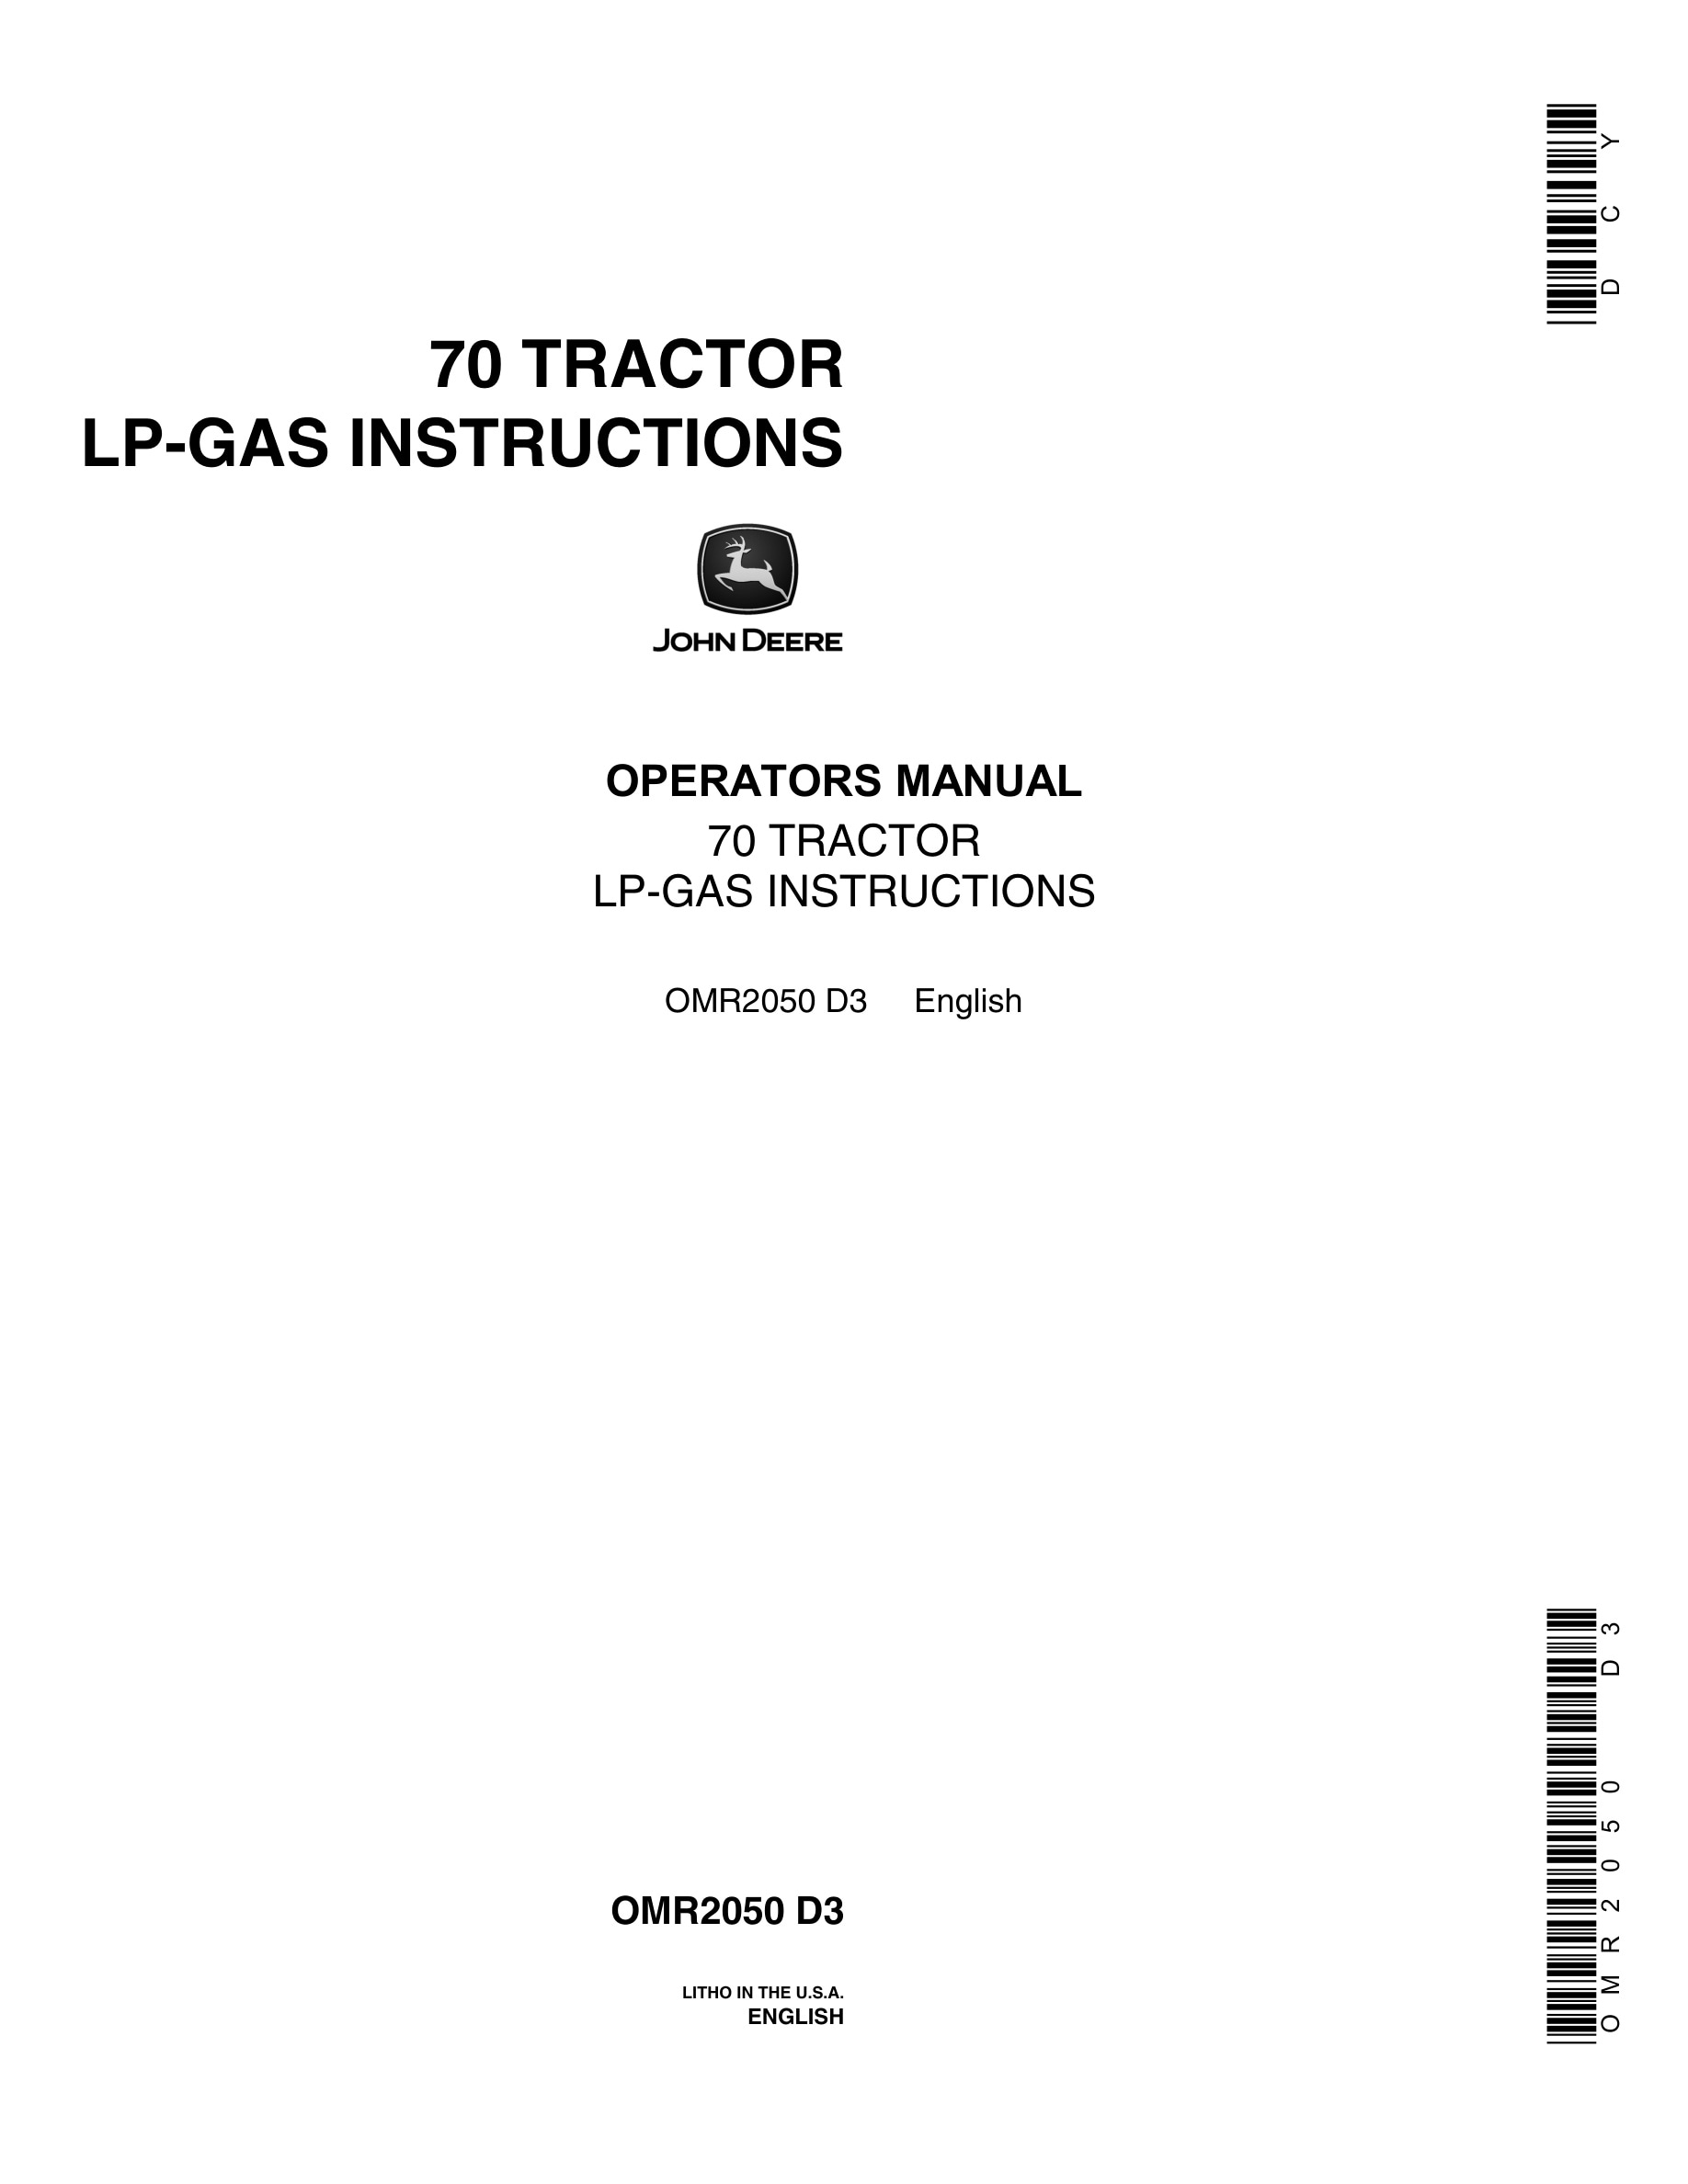 John Deere Model 70 Tractor Operator Manual OMR2050-1